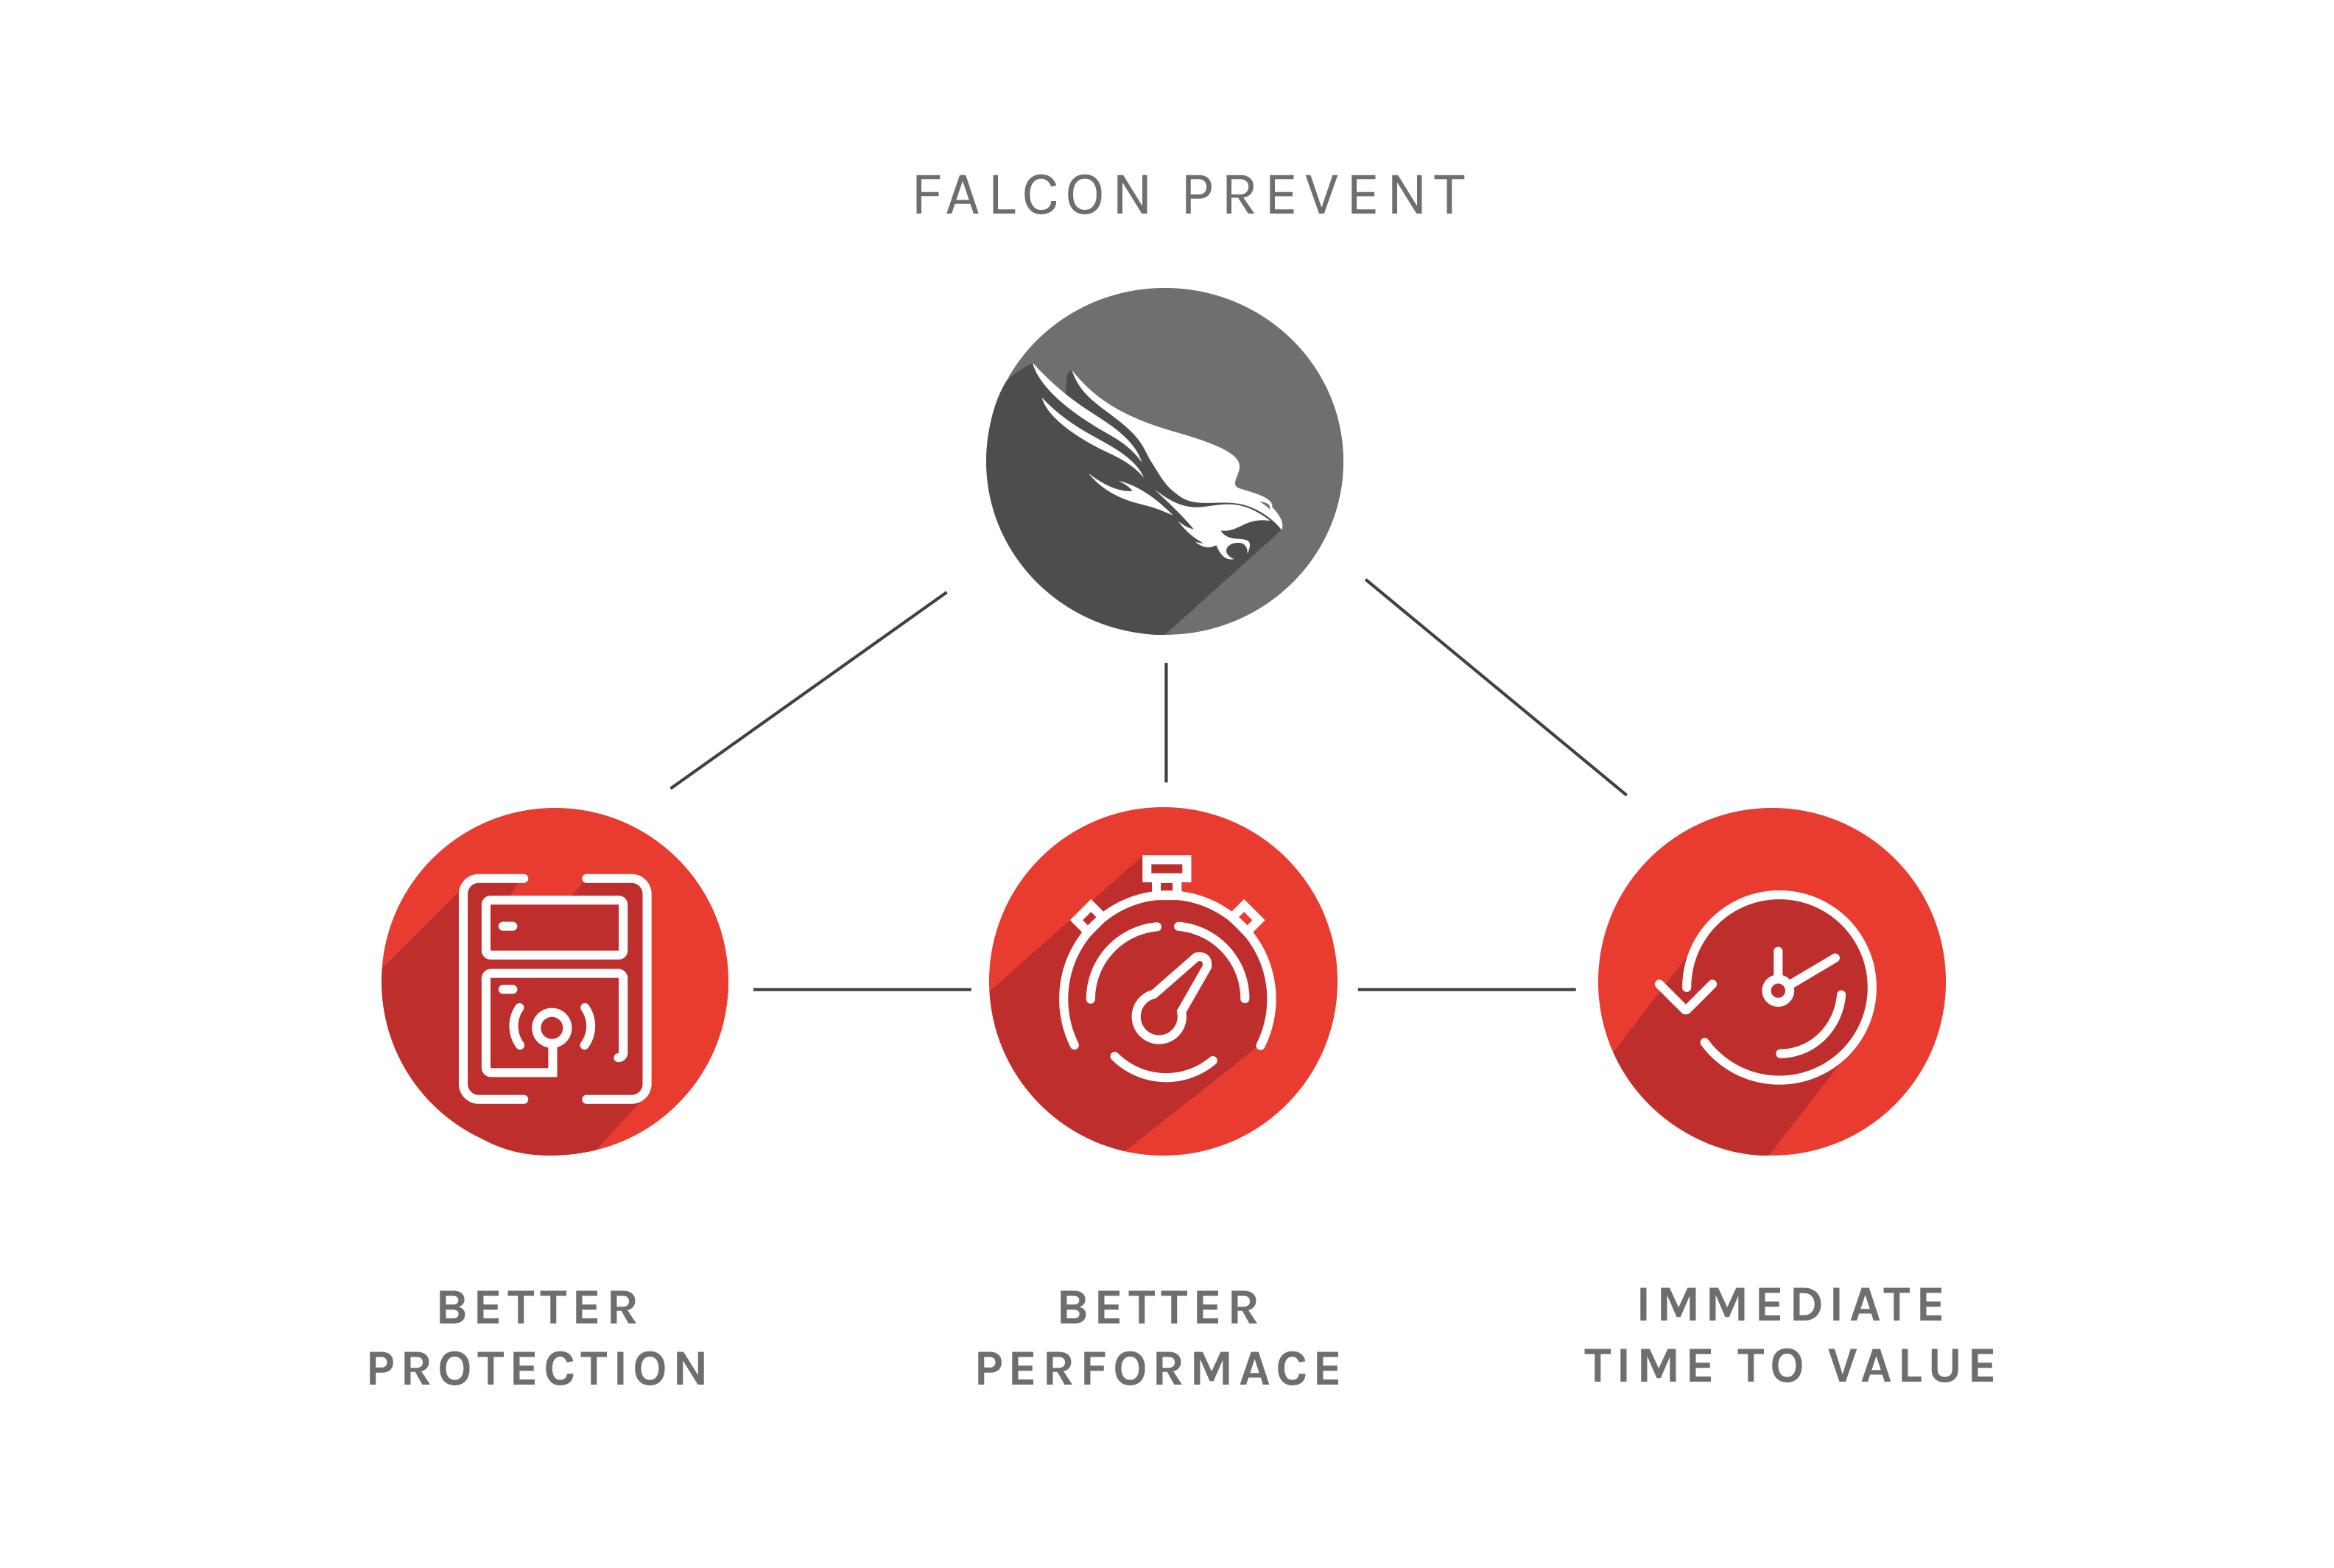 CrowdStrike Logo - Next Gen Antivirus (NGAV): Falcon Prevent